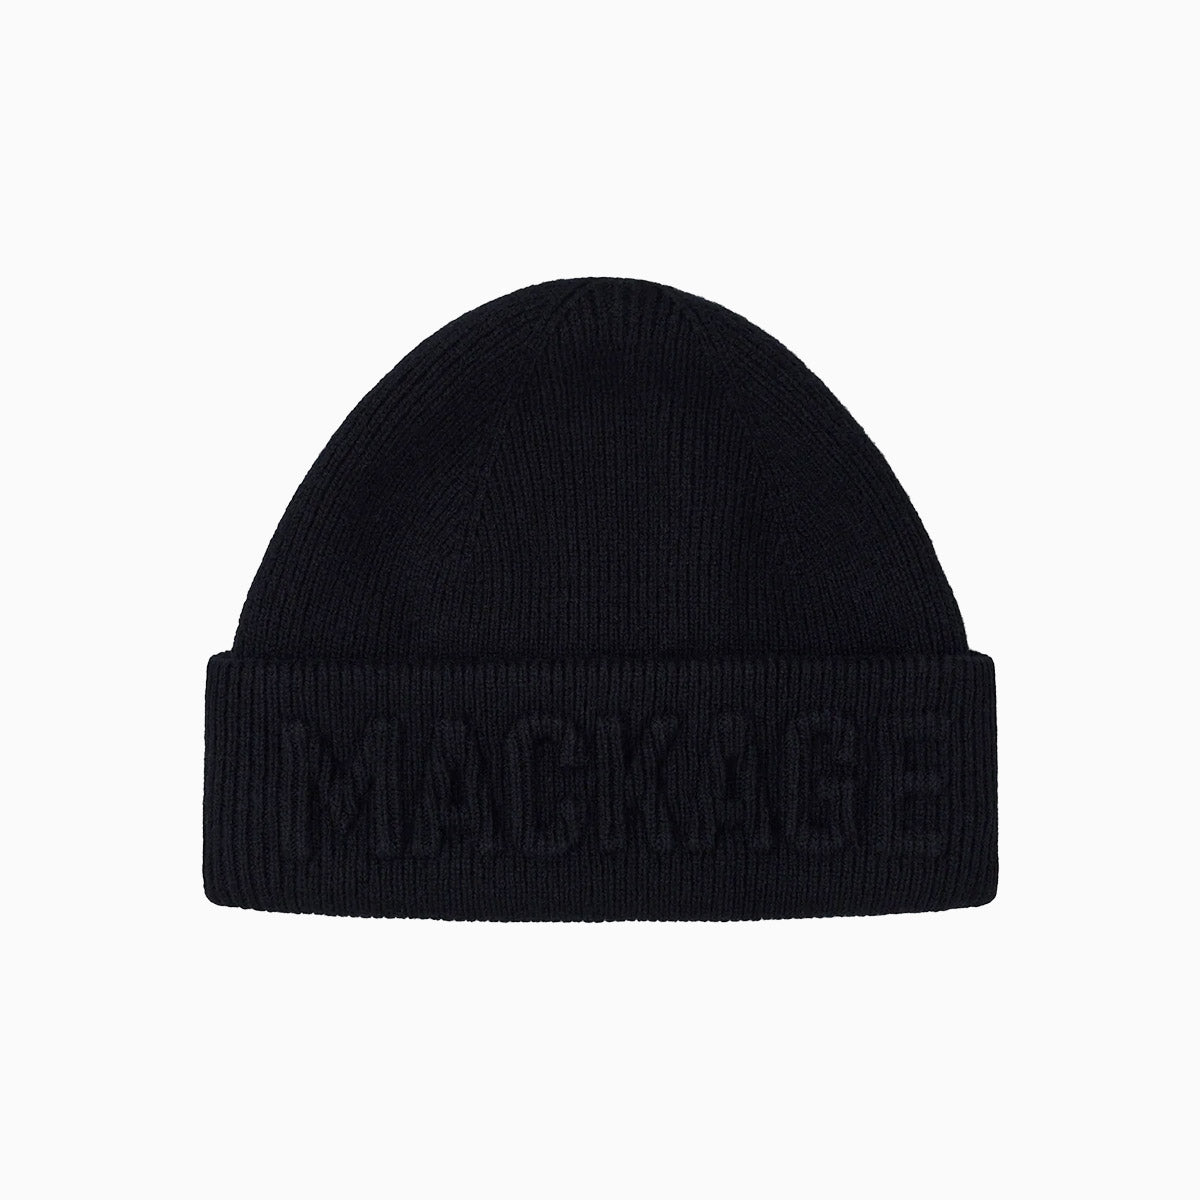 mackage-jett-knit-merino-and-cashmere-beanie-hat-jett-black